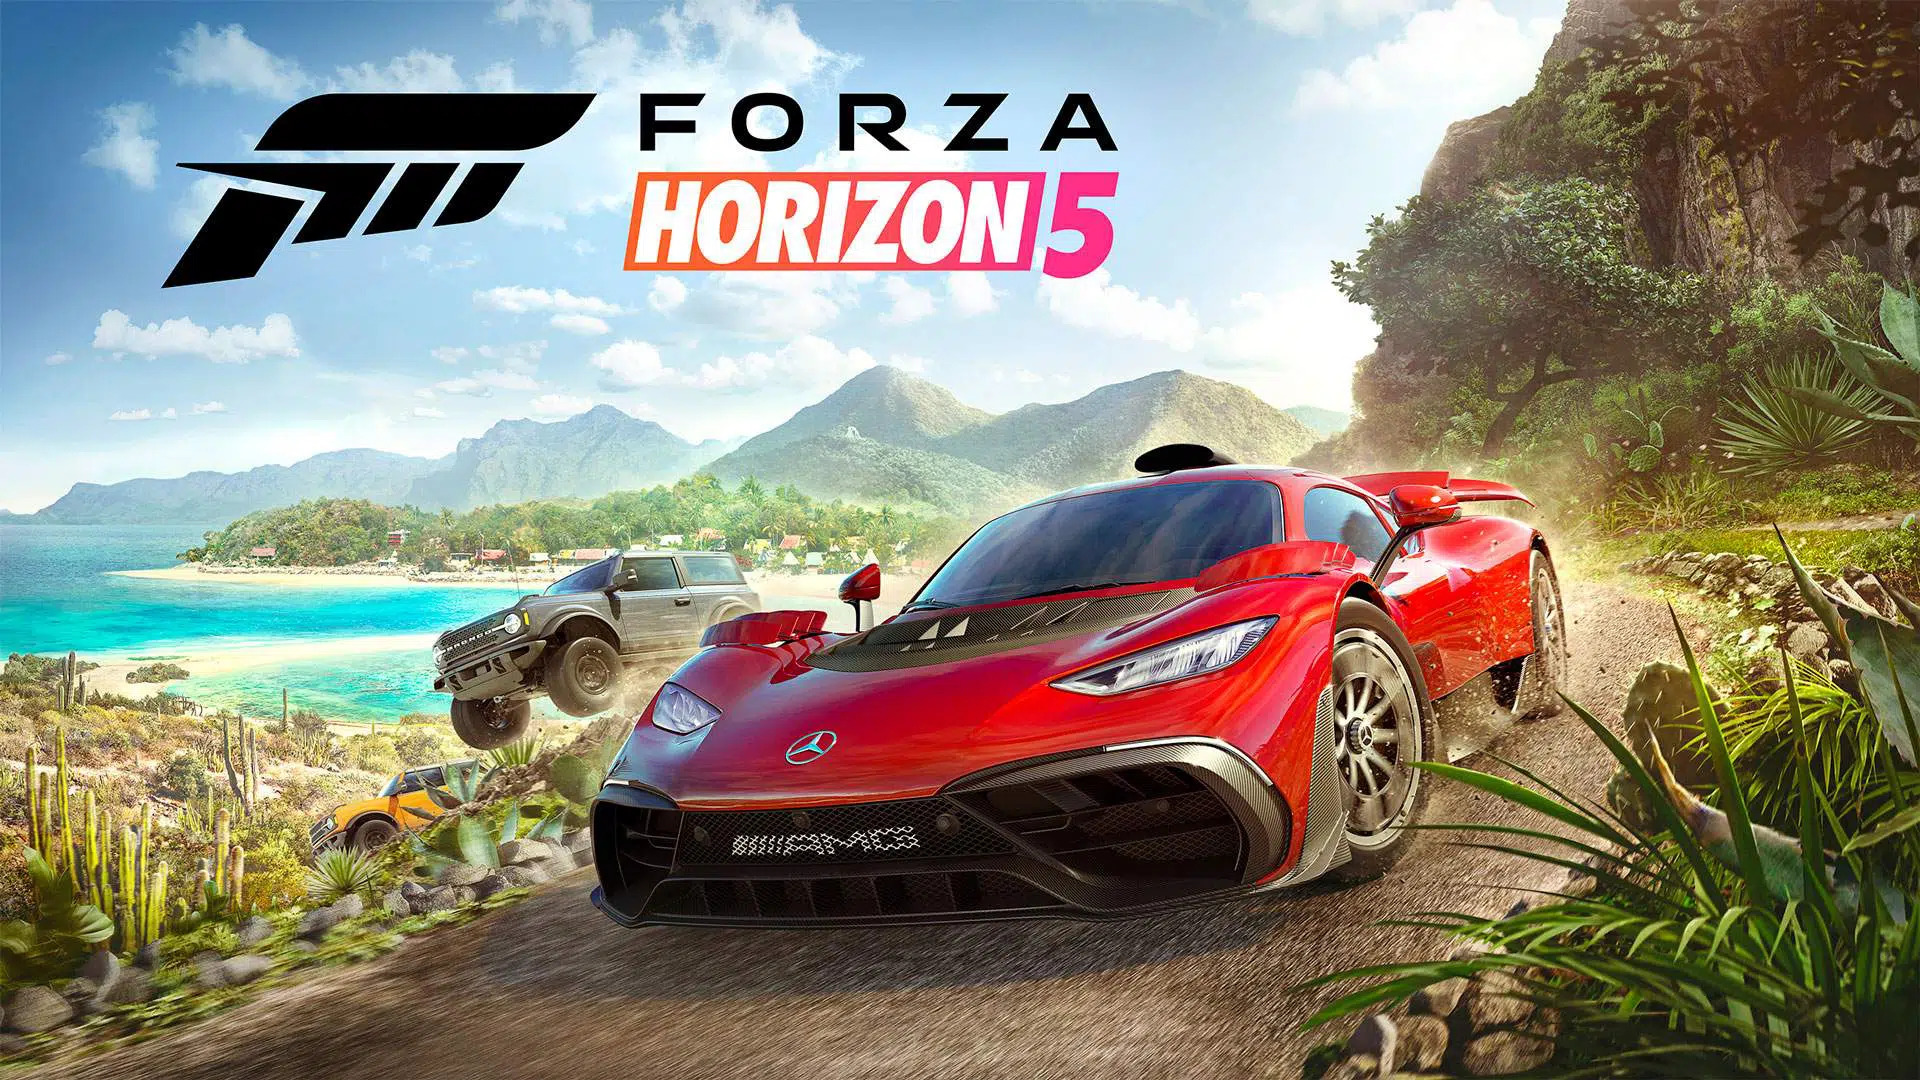 เปิดตัววิดีโอตัวอย่างใหม่ของ Forza Horizon 5 โชว์เกมเพลย์การขับขี่ในโลกเปิดกว้างของภูมิประเทศเม็กซิโกกว่า 8 นาที